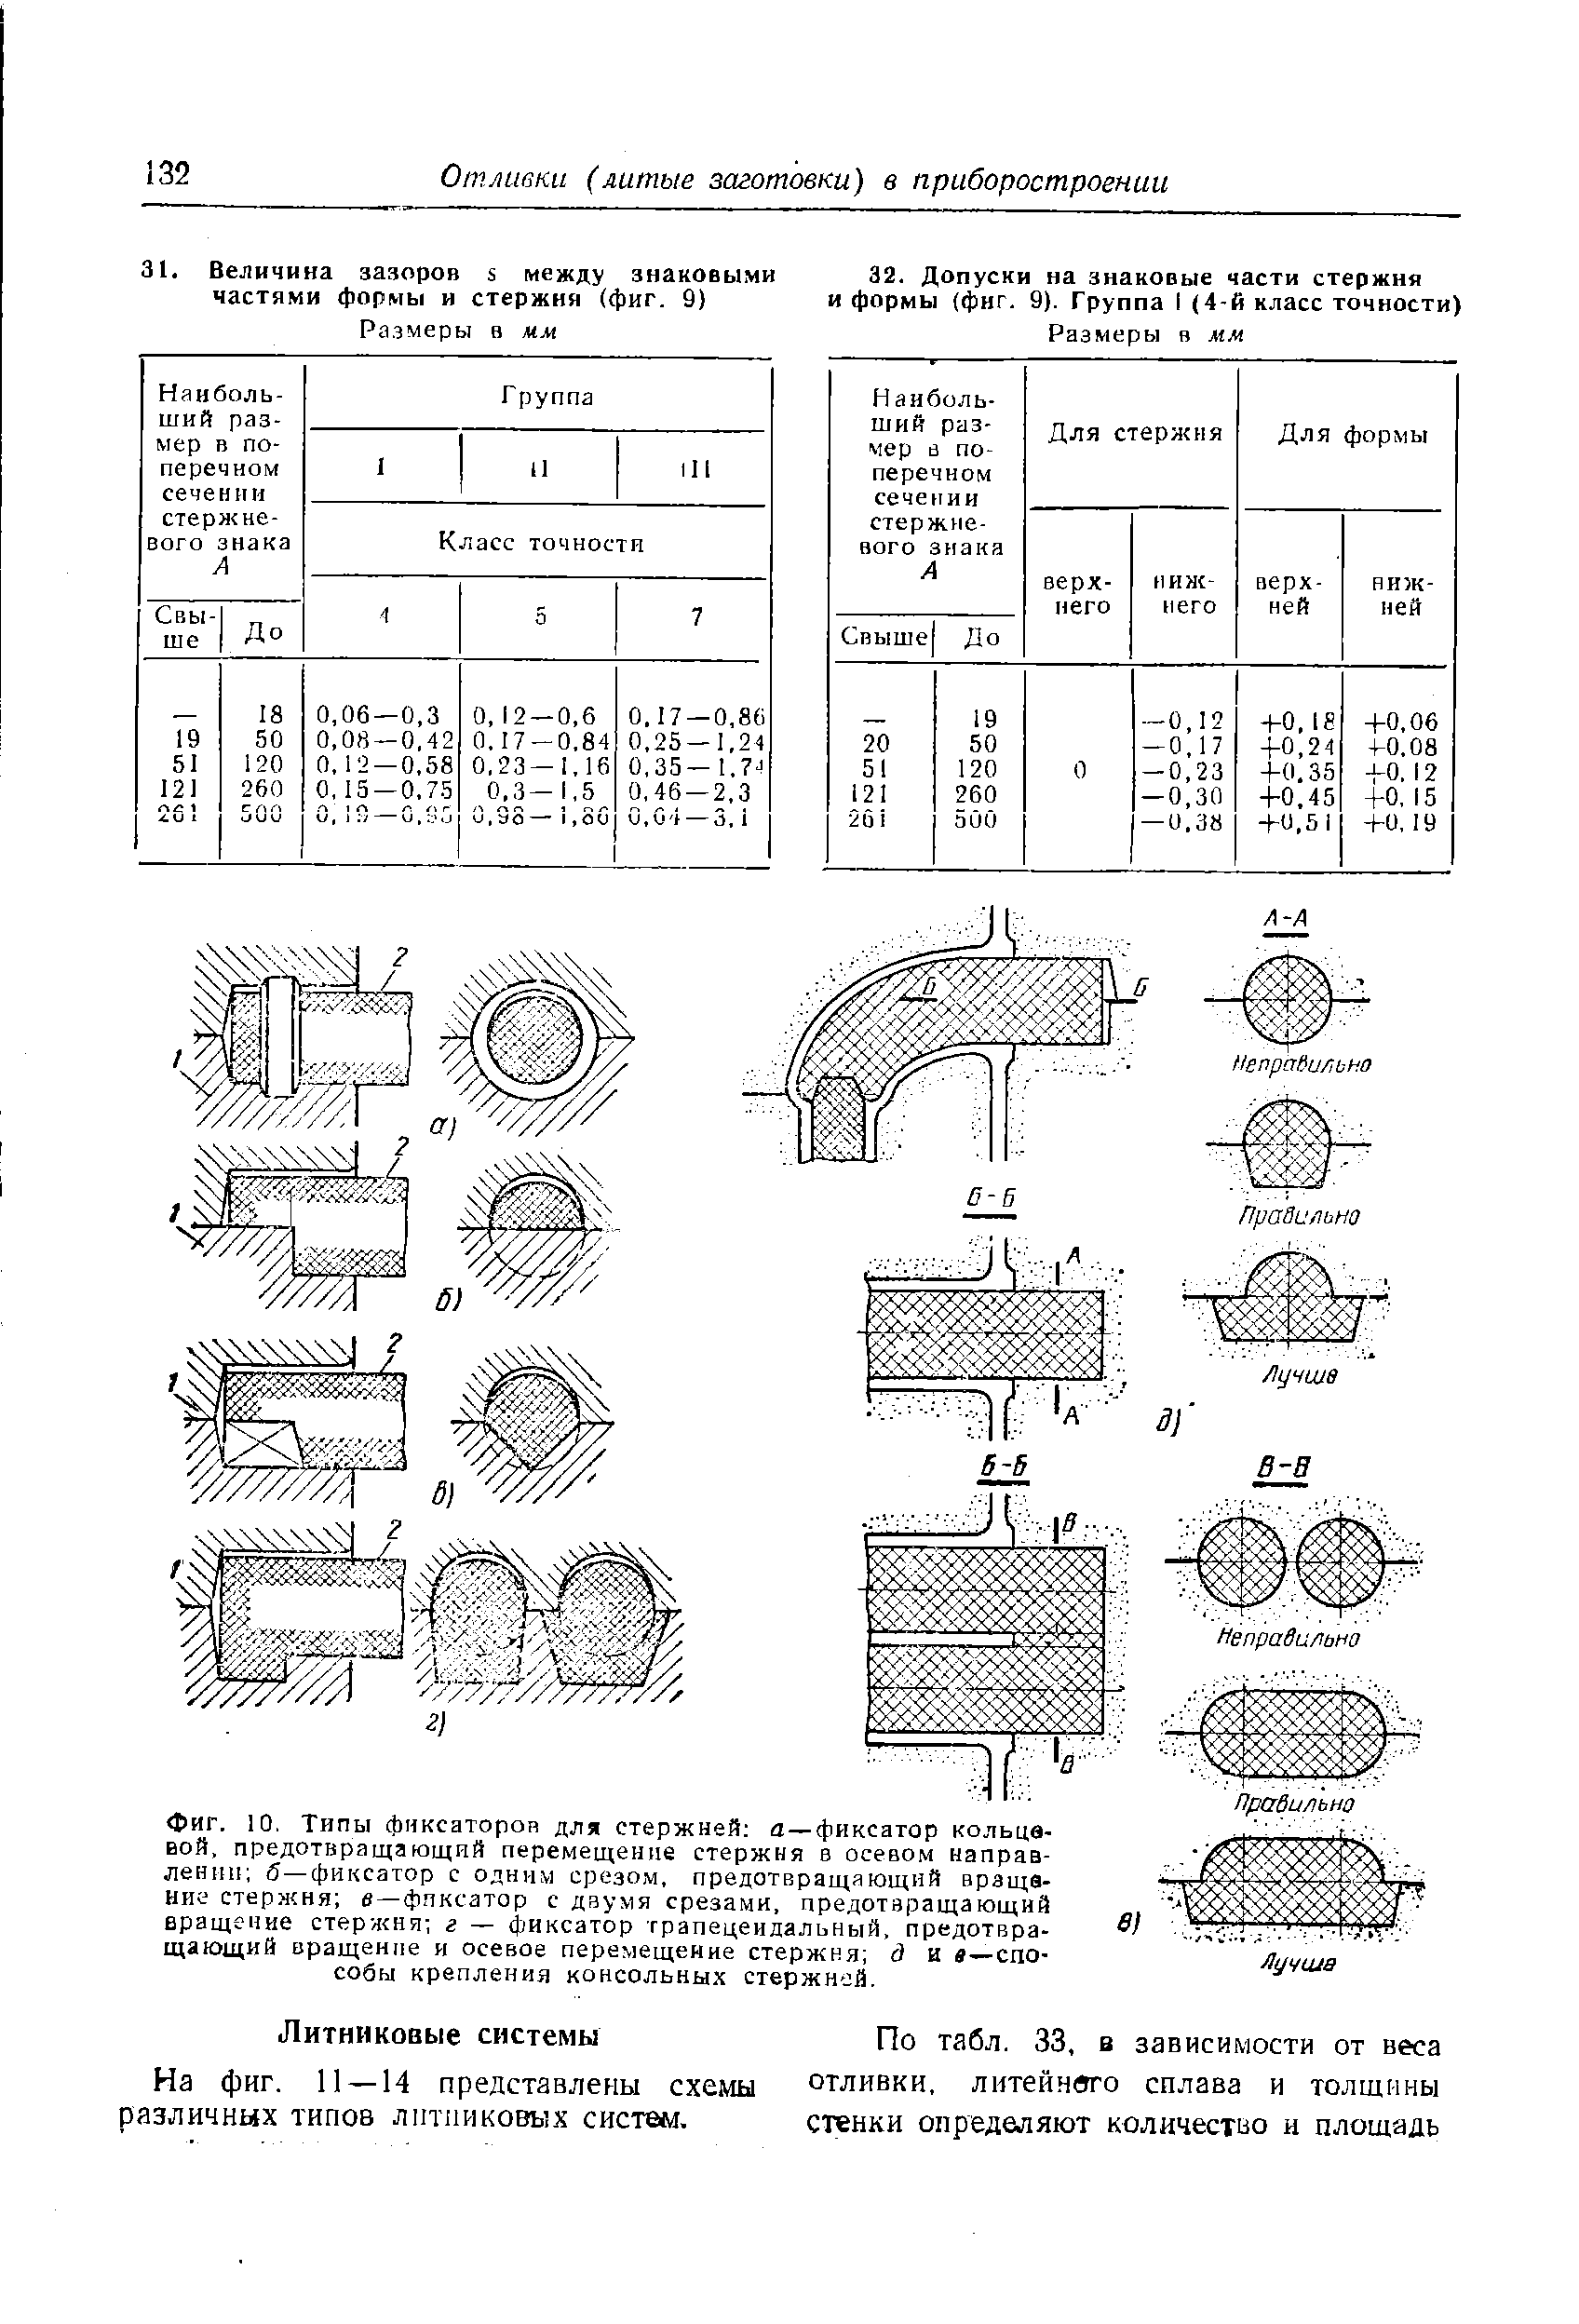 На фиг. 11 — 14 представлены схемы различных типов литниковых систш.
